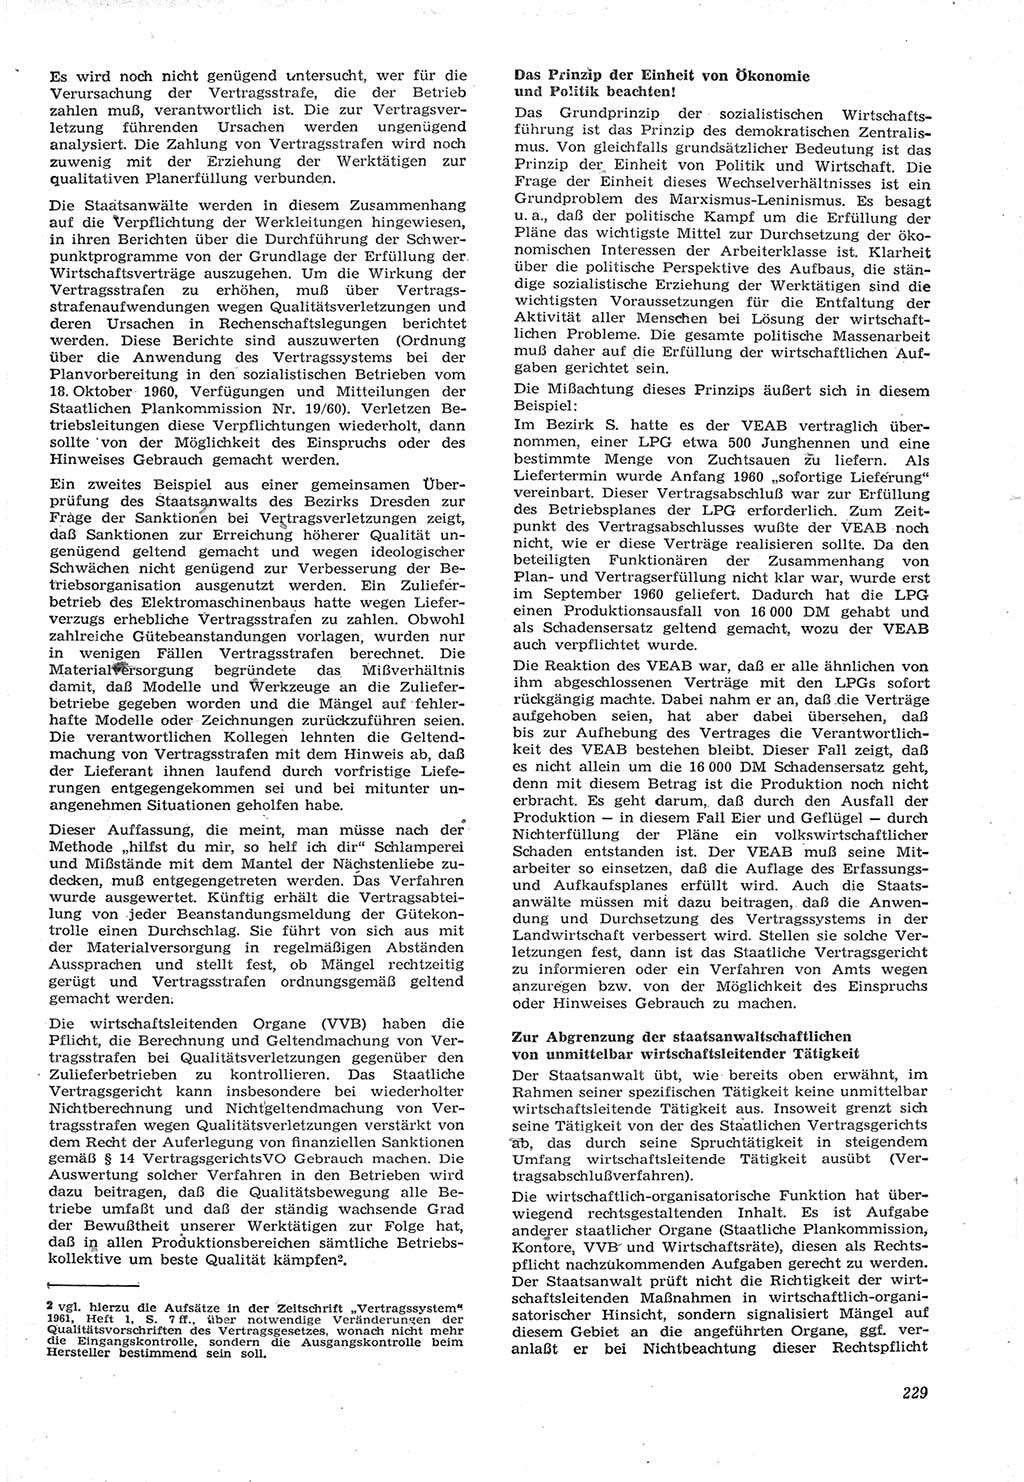 Neue Justiz (NJ), Zeitschrift für Recht und Rechtswissenschaft [Deutsche Demokratische Republik (DDR)], 15. Jahrgang 1961, Seite 229 (NJ DDR 1961, S. 229)